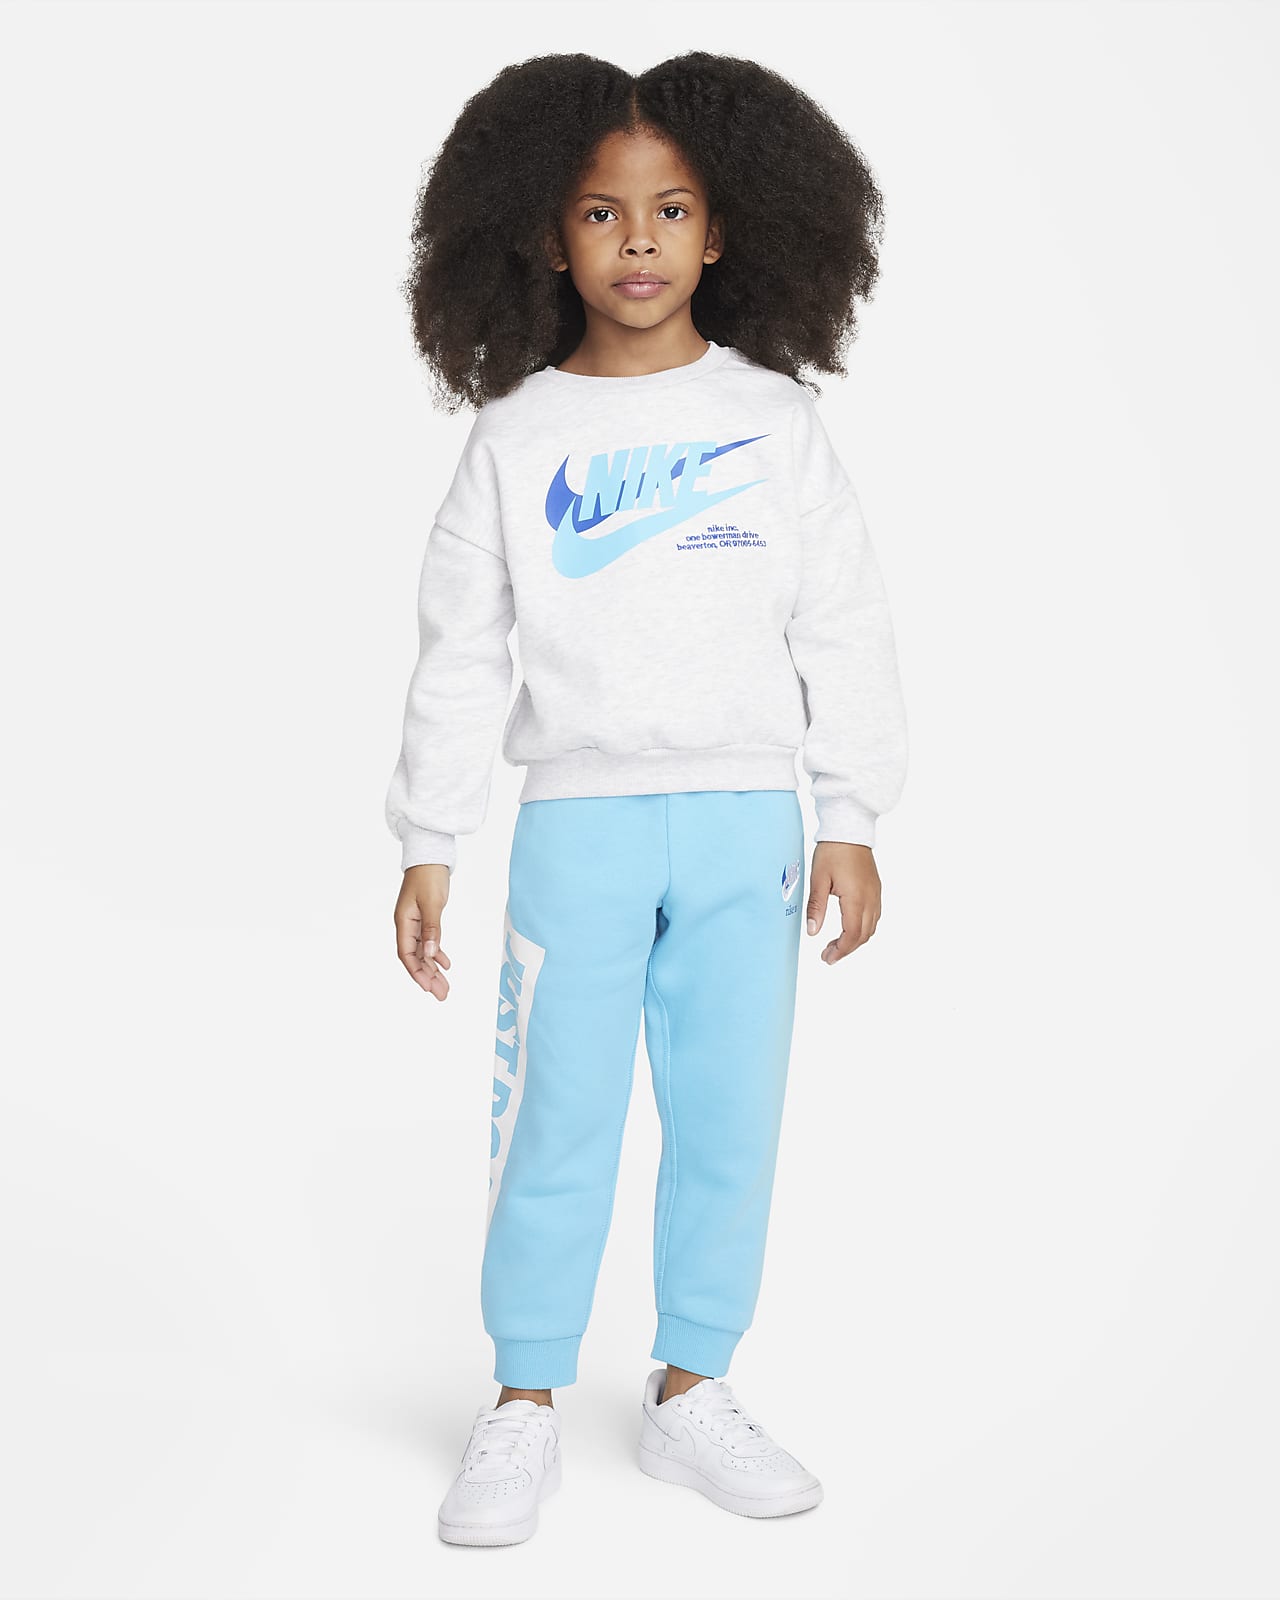 Nike Toddler Boy's Therma Dri-FIT Flex Showtime Pants Sz: 2T | eBay